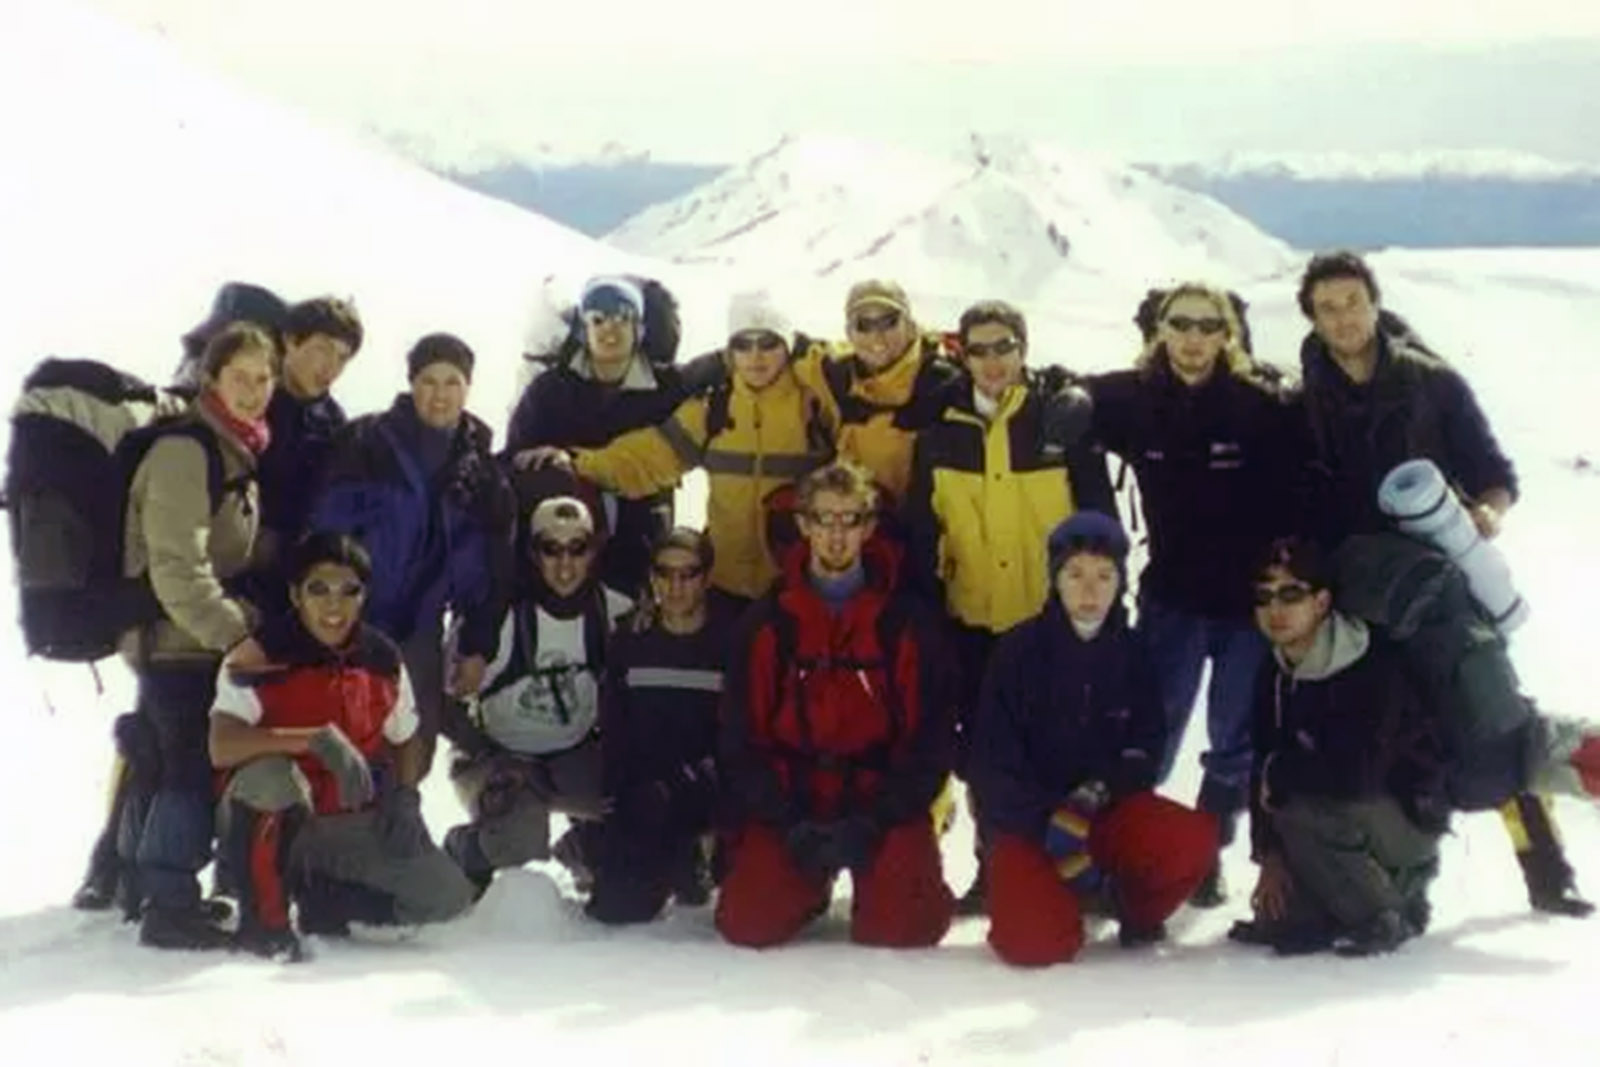 grupo-2-avalancha-cerro-ventana-bariloche-patagonia-lugares-de-aventura-lugares-de-nieve.jpg